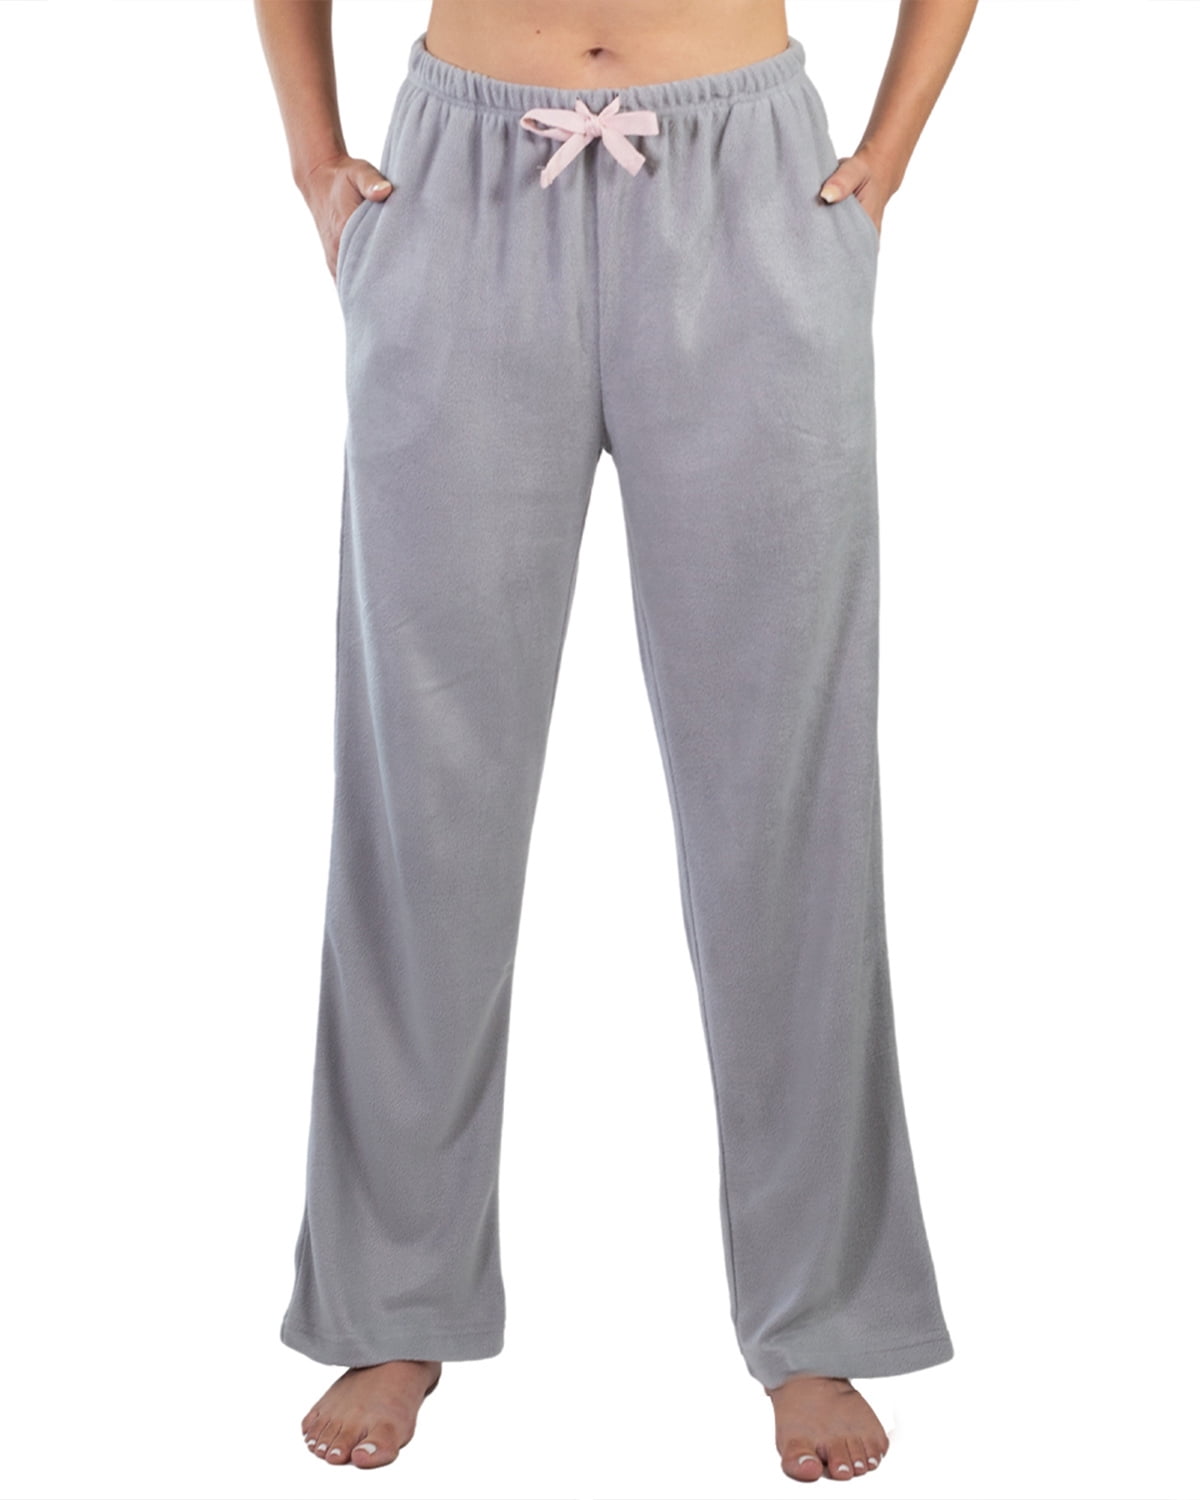 Jo & Bette Women's Fleece Pajama Pants with Pockets, Plaid Sleep Pants